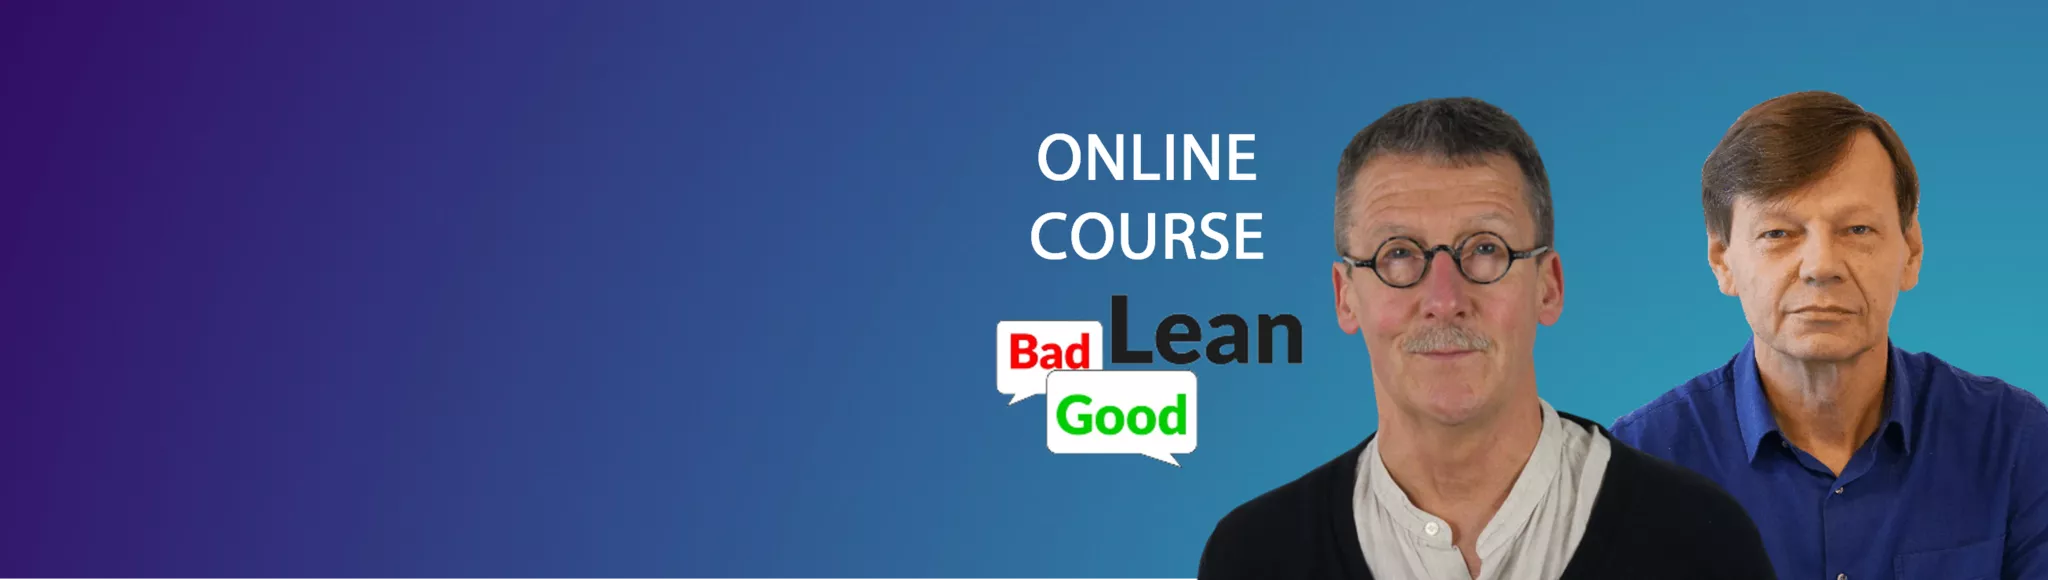 Lean Online Course